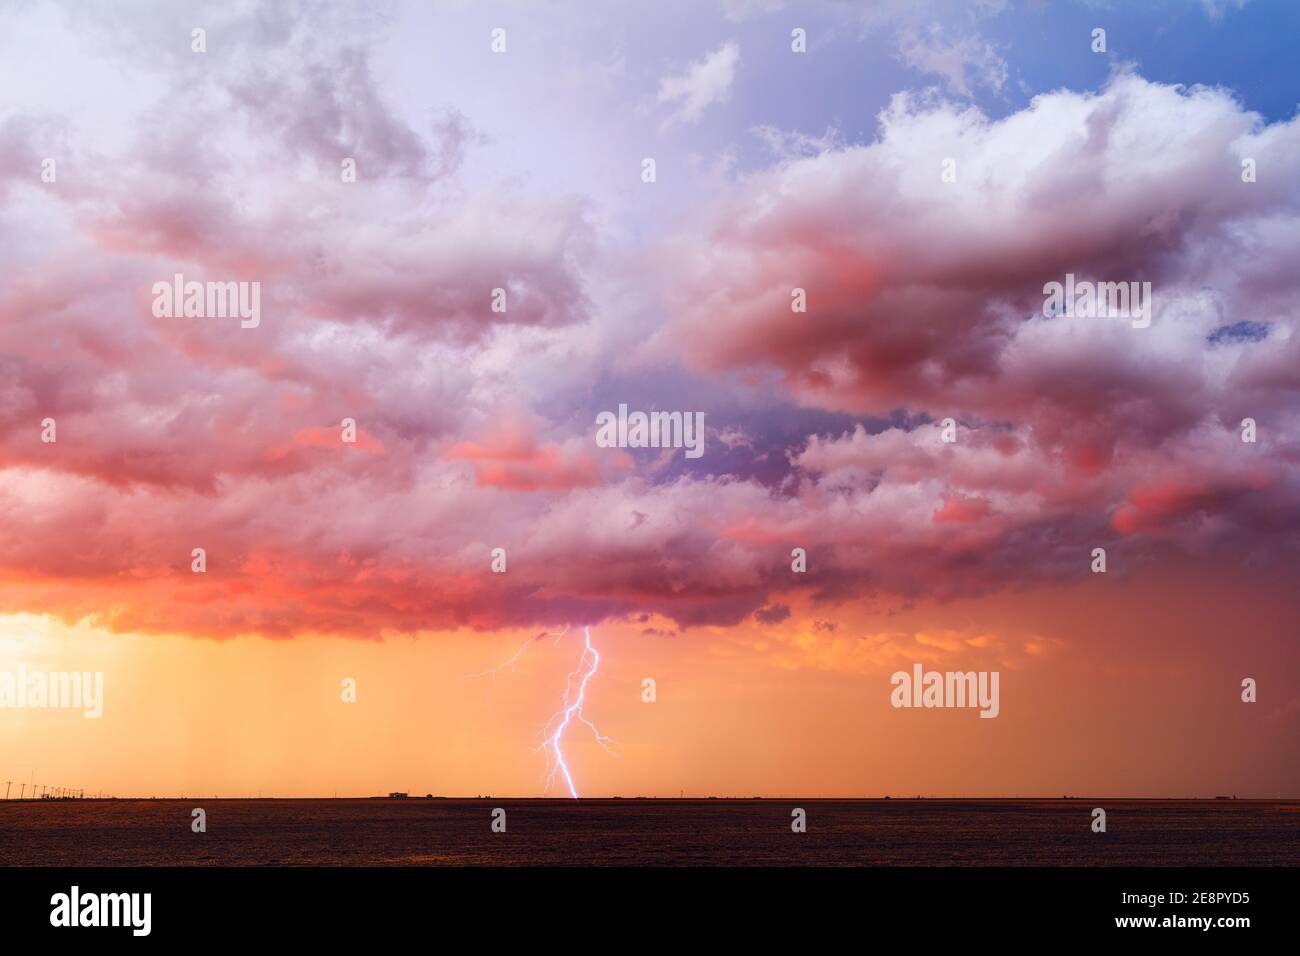 Stürmischer Sonnenuntergangshimmel mit dramatischen Wolken und Blitzeinschlägen, wenn sich ein Gewitter Perryton, Texas, nähert Stockfoto